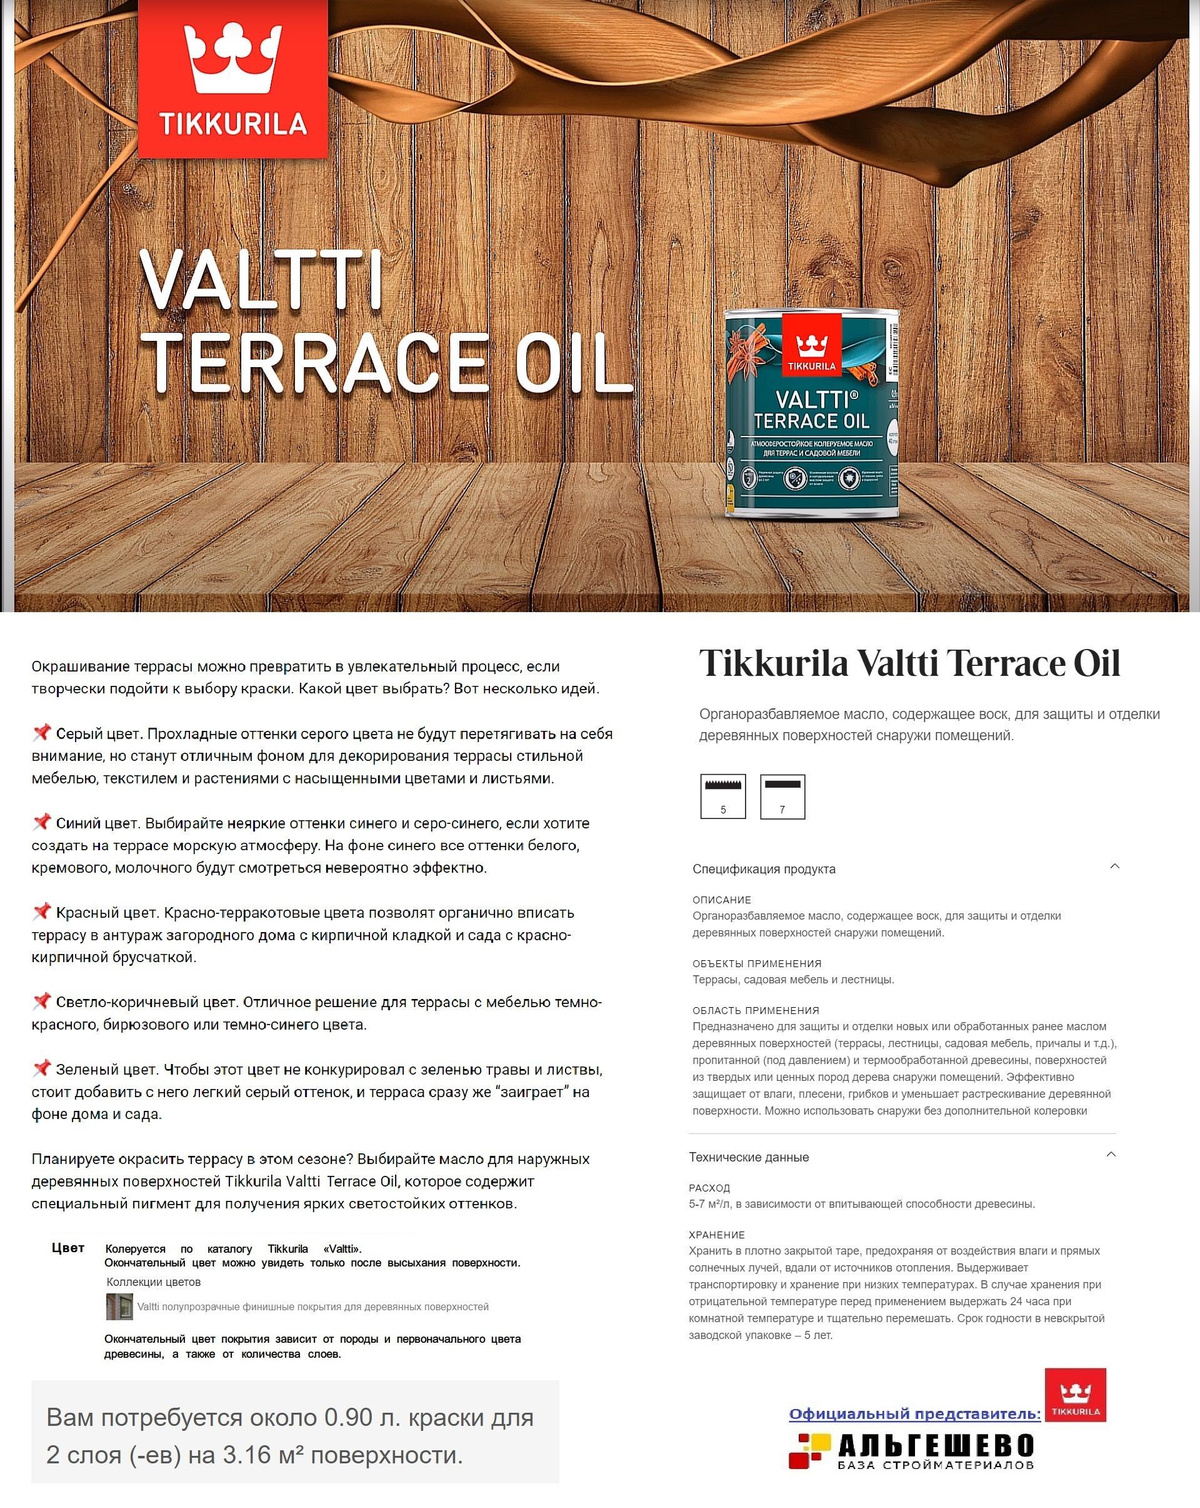 Tikkurila Valtti Terrace Oil Органоразбавляемое масло, содержащее воск, для защиты и отделки деревянных поверхностей снаружи помещений.